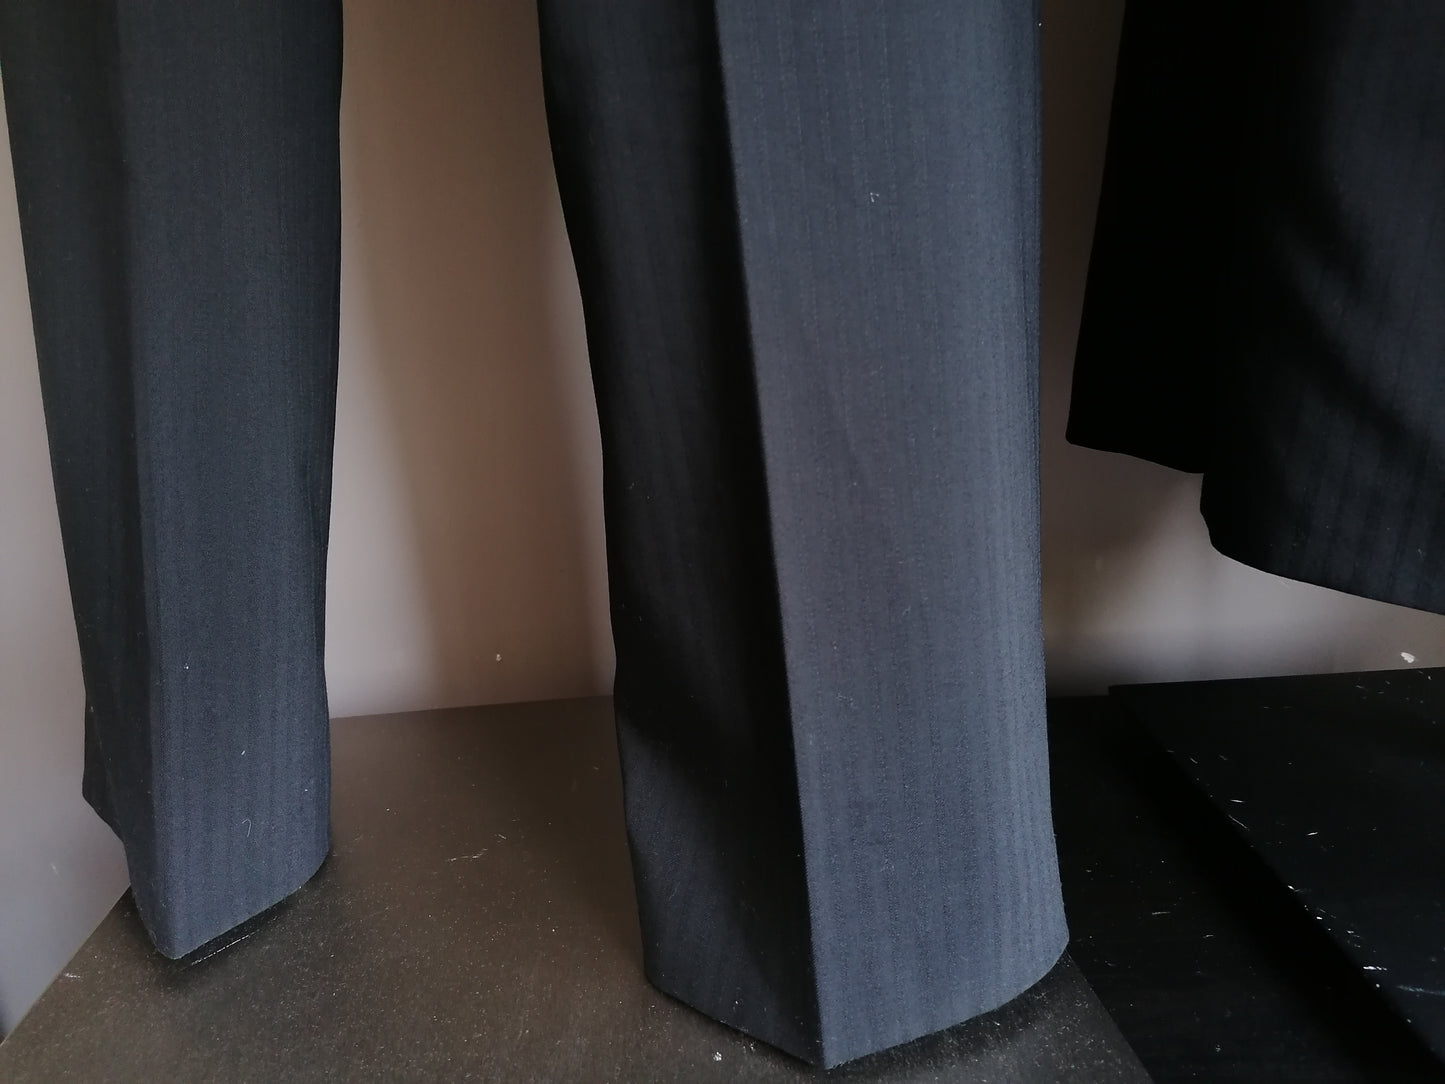 Costume di lana a 3 pezzi Peter Van Holland. A strisce nera. Taglia 56 / XL.